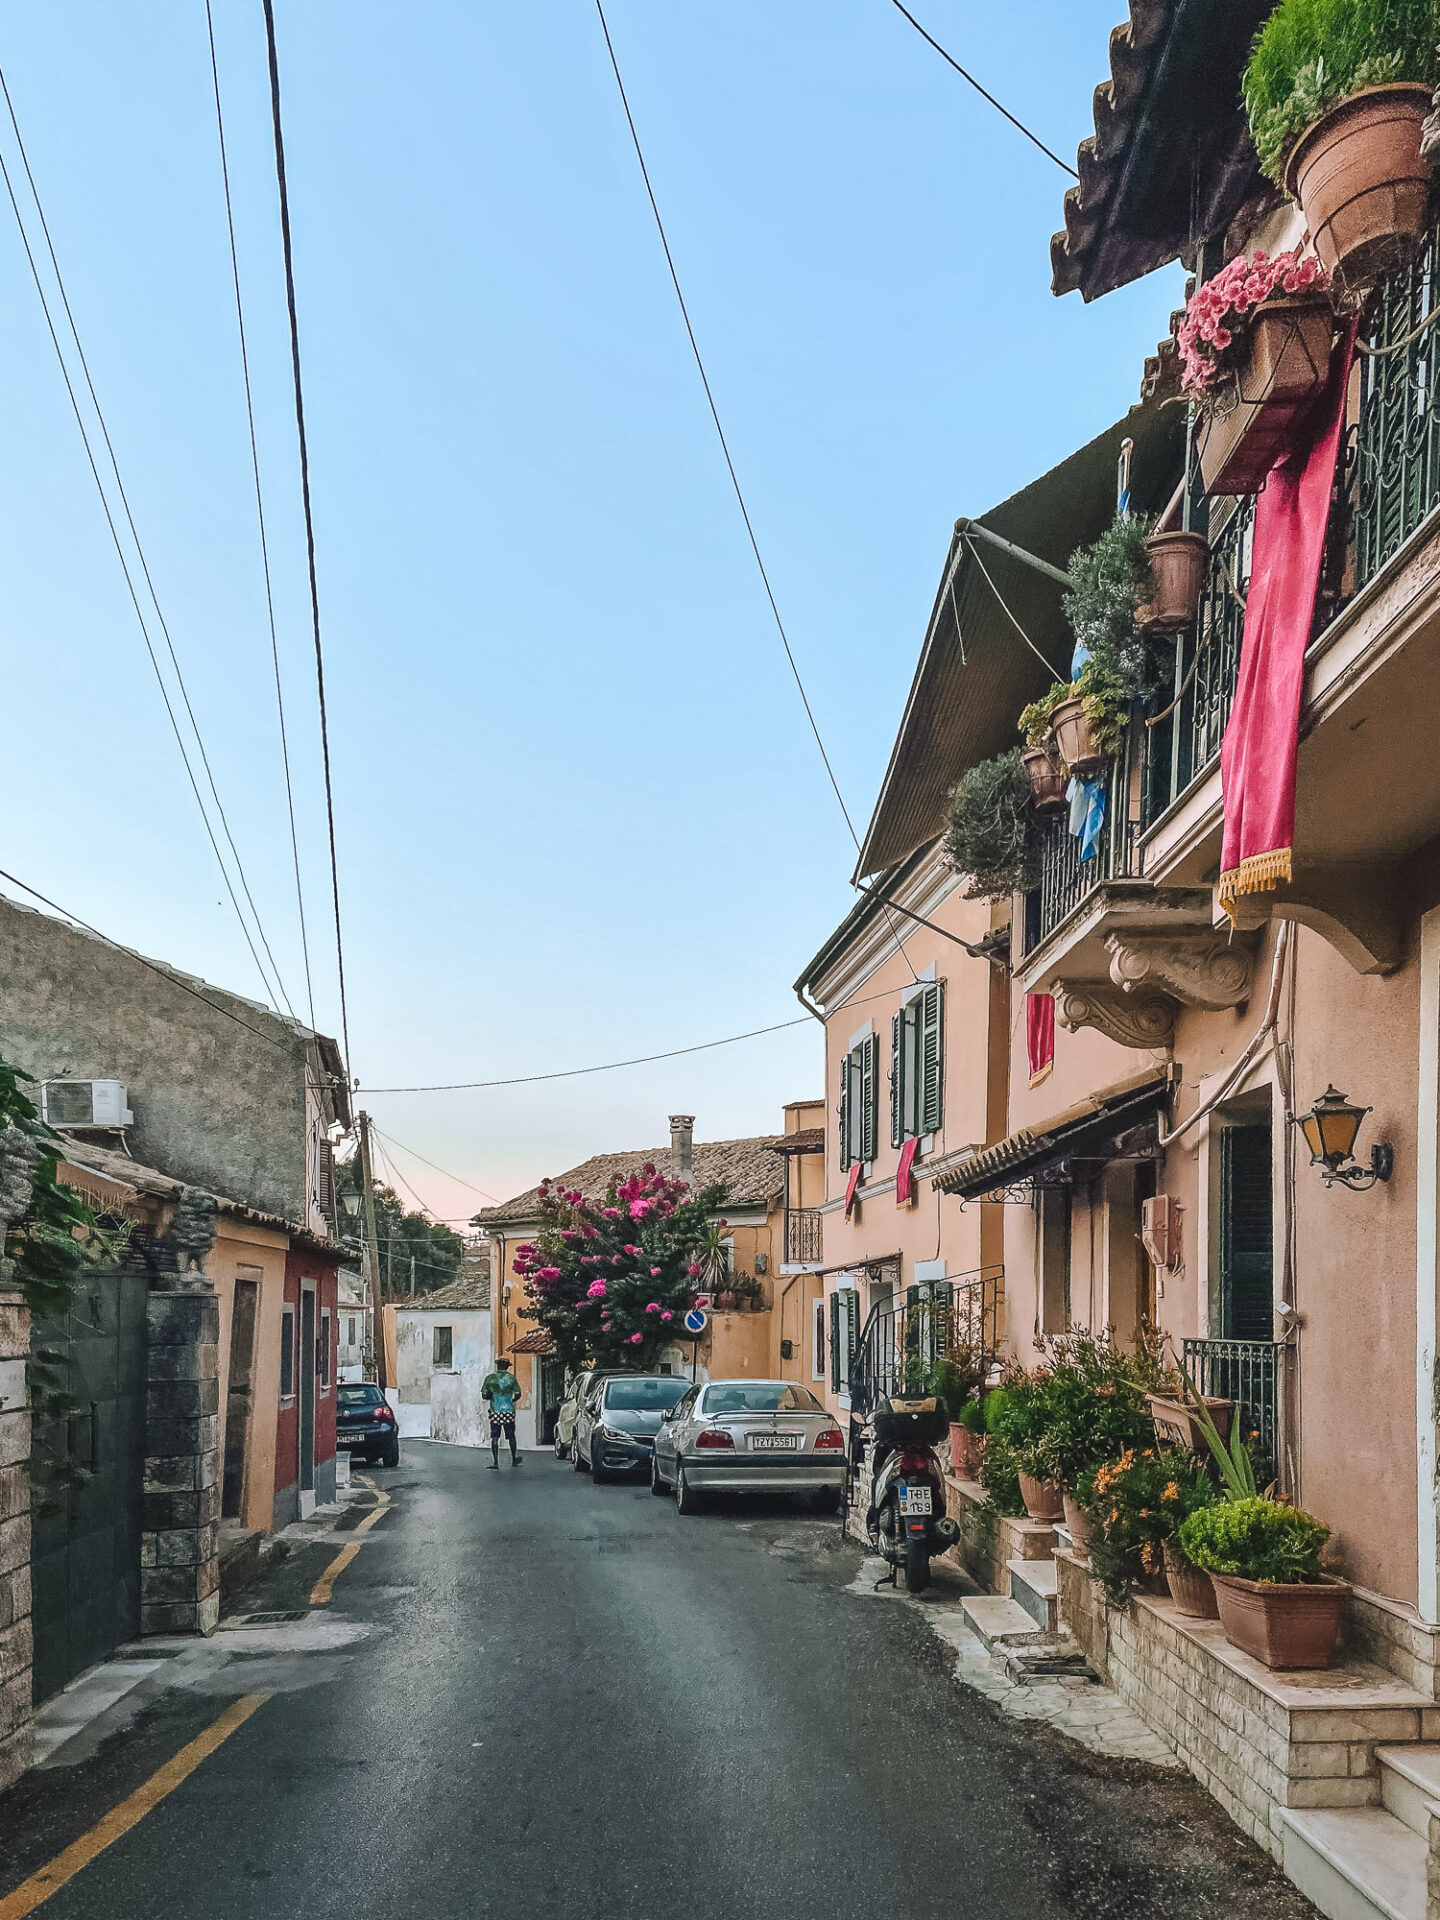 Street in a small town on Corfu Island